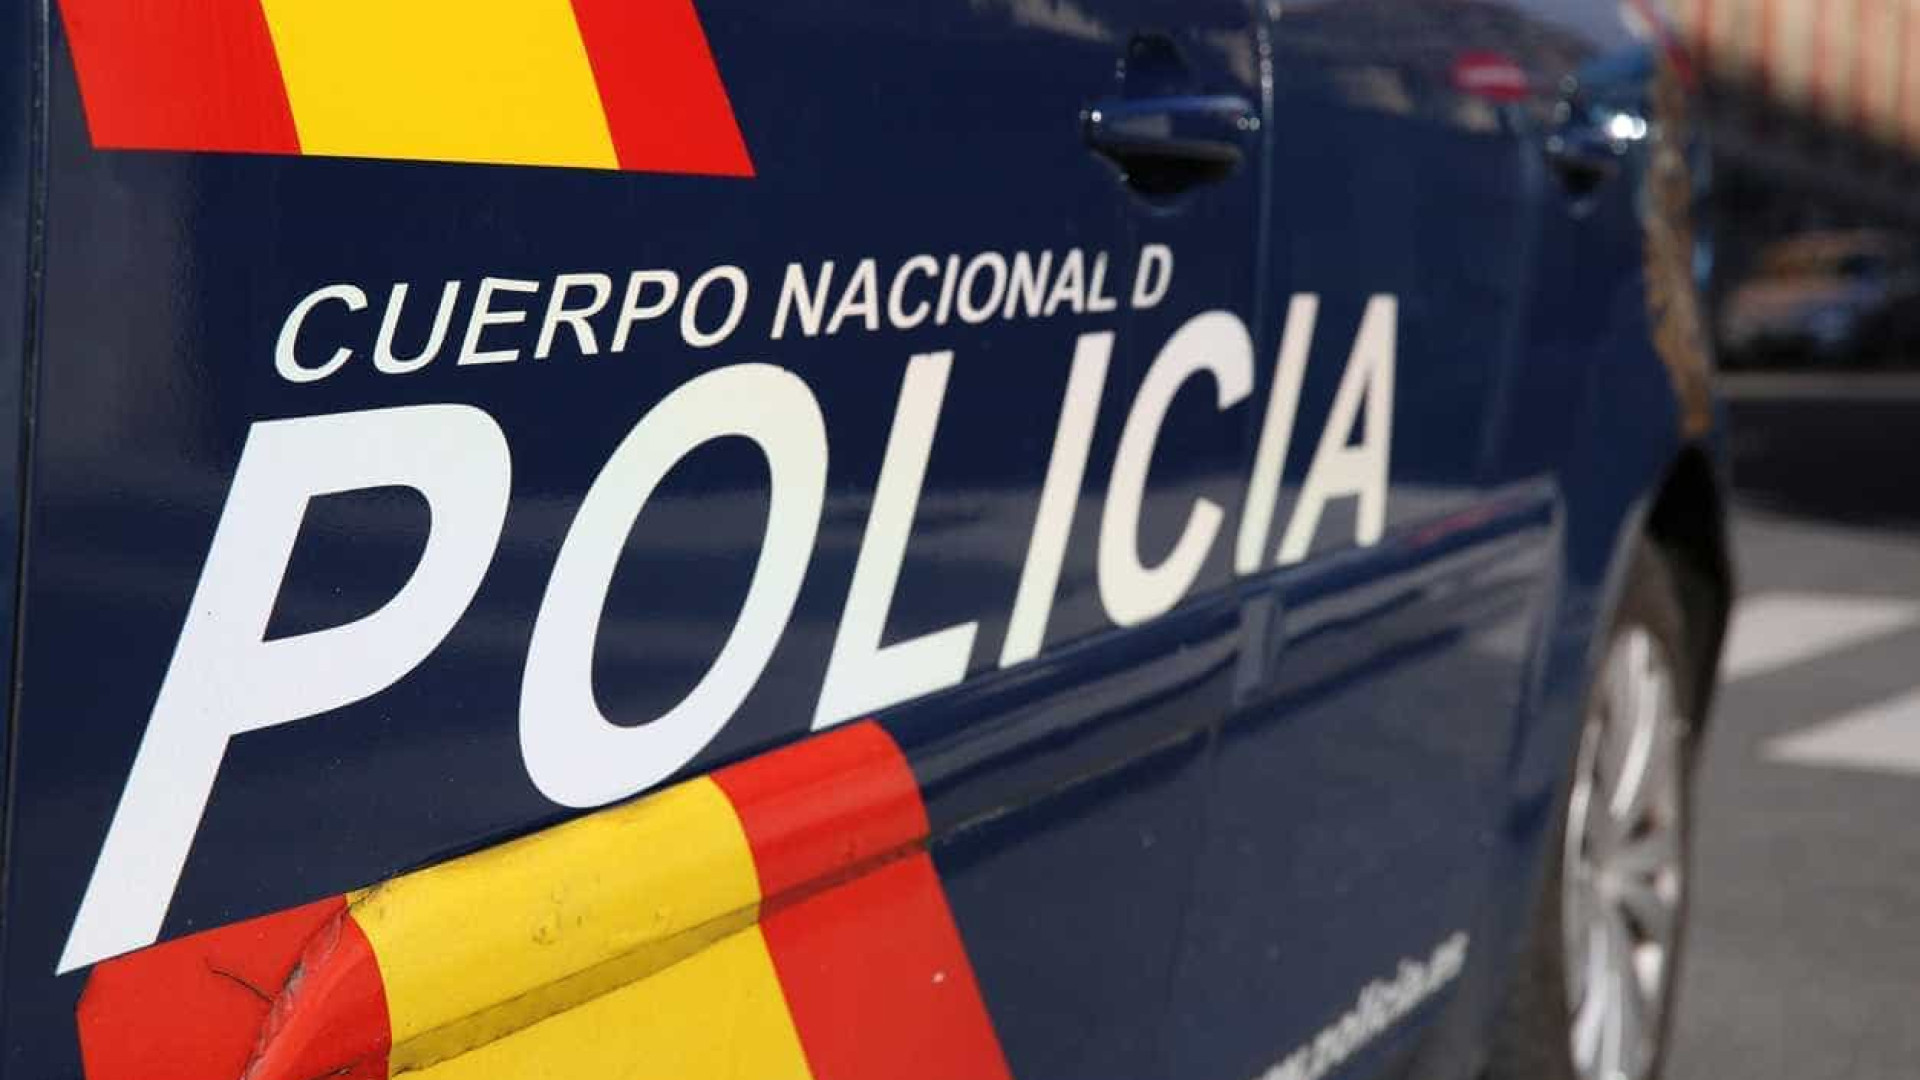 Menor de 14 anos detido por agredir sexualmente colega em Espanha